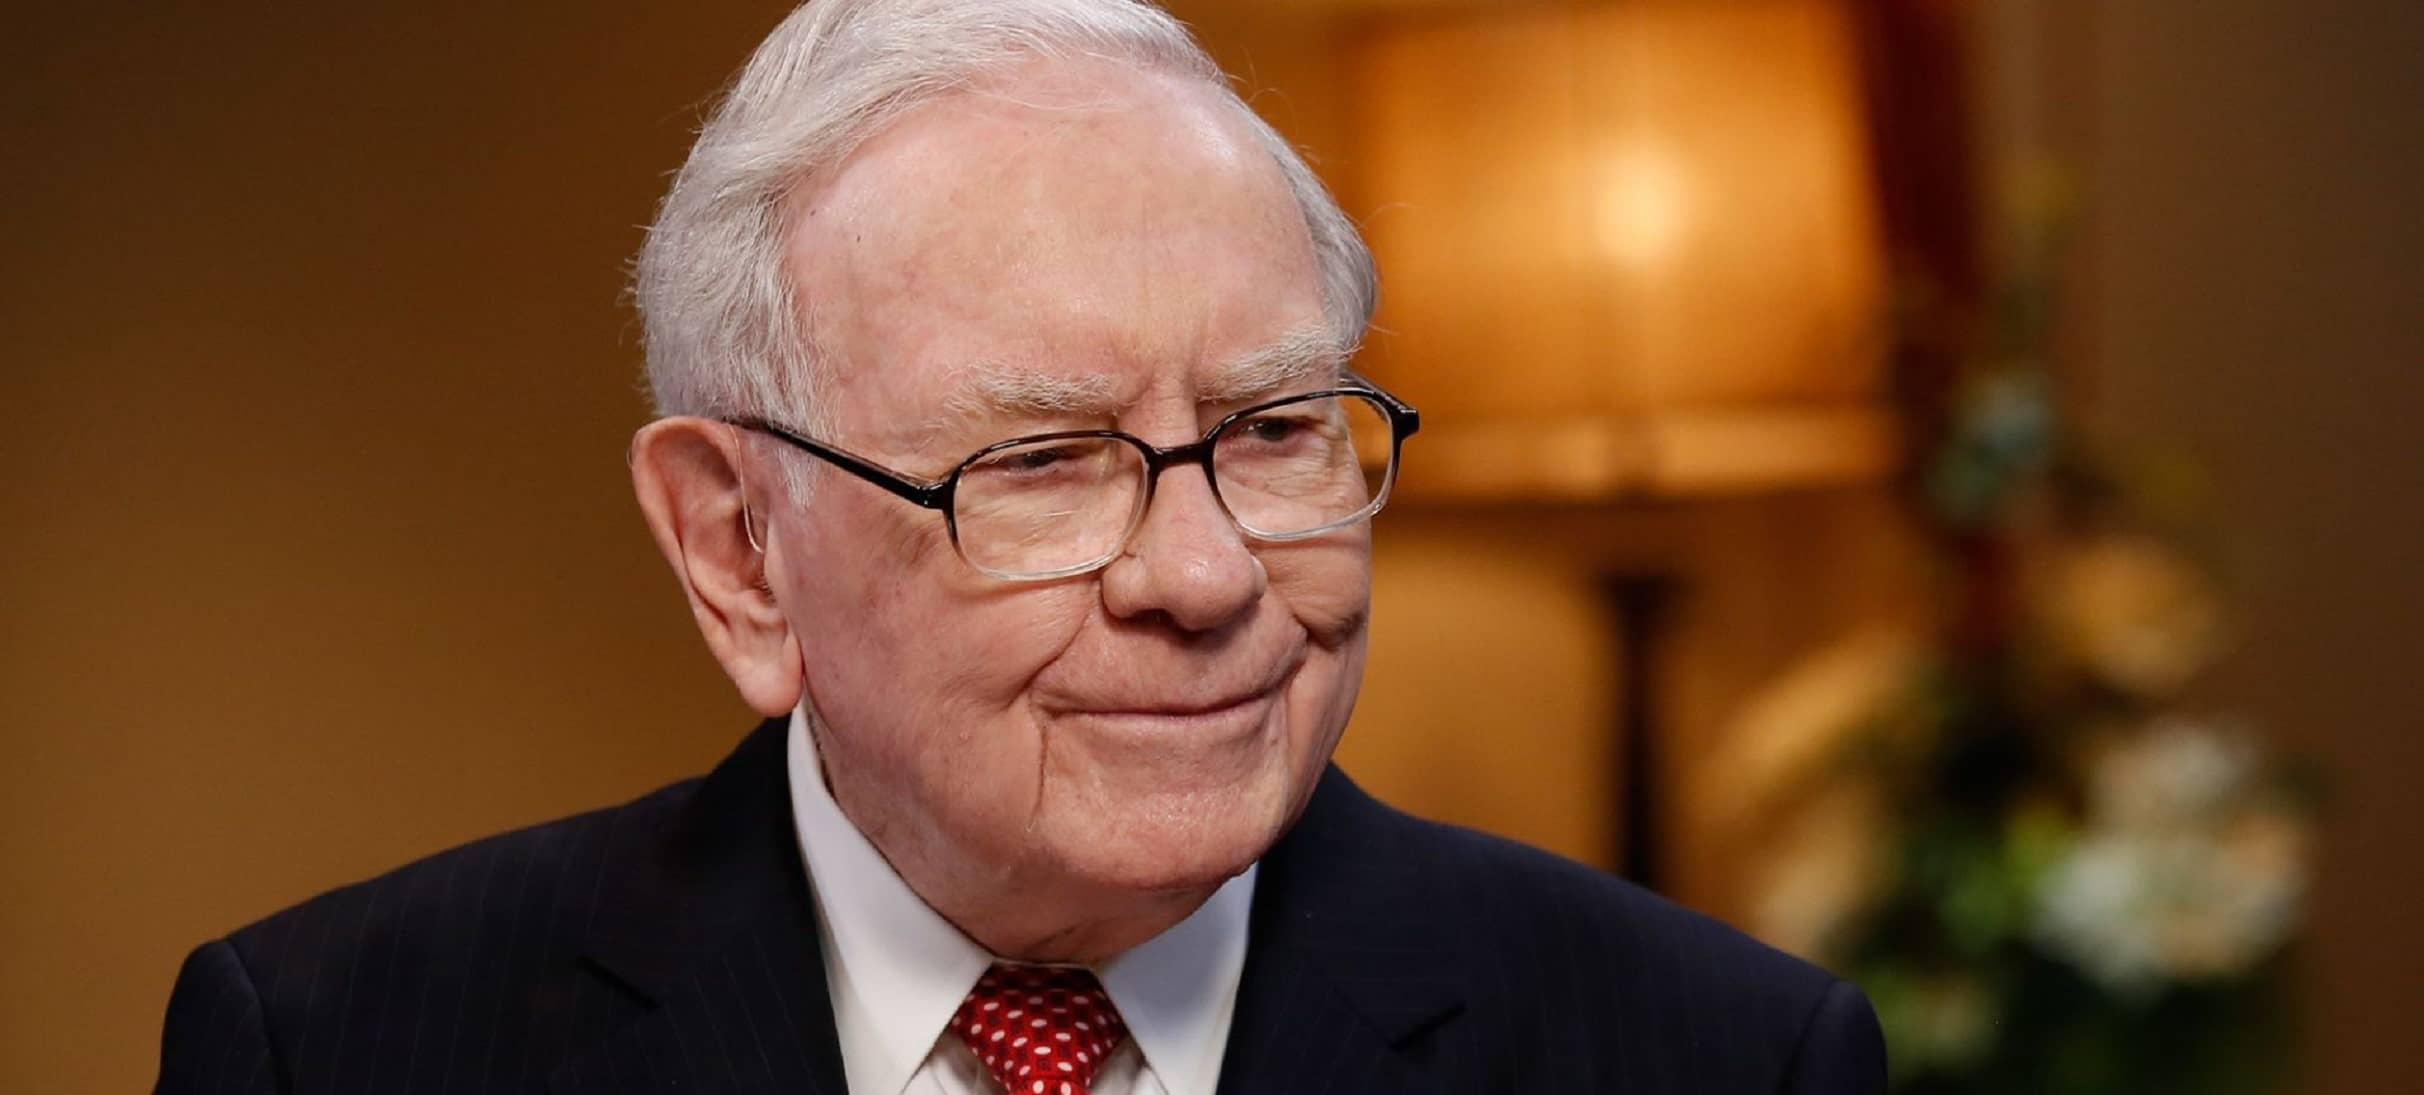 Quem é Warren Buffett? – Grandes empresários #1